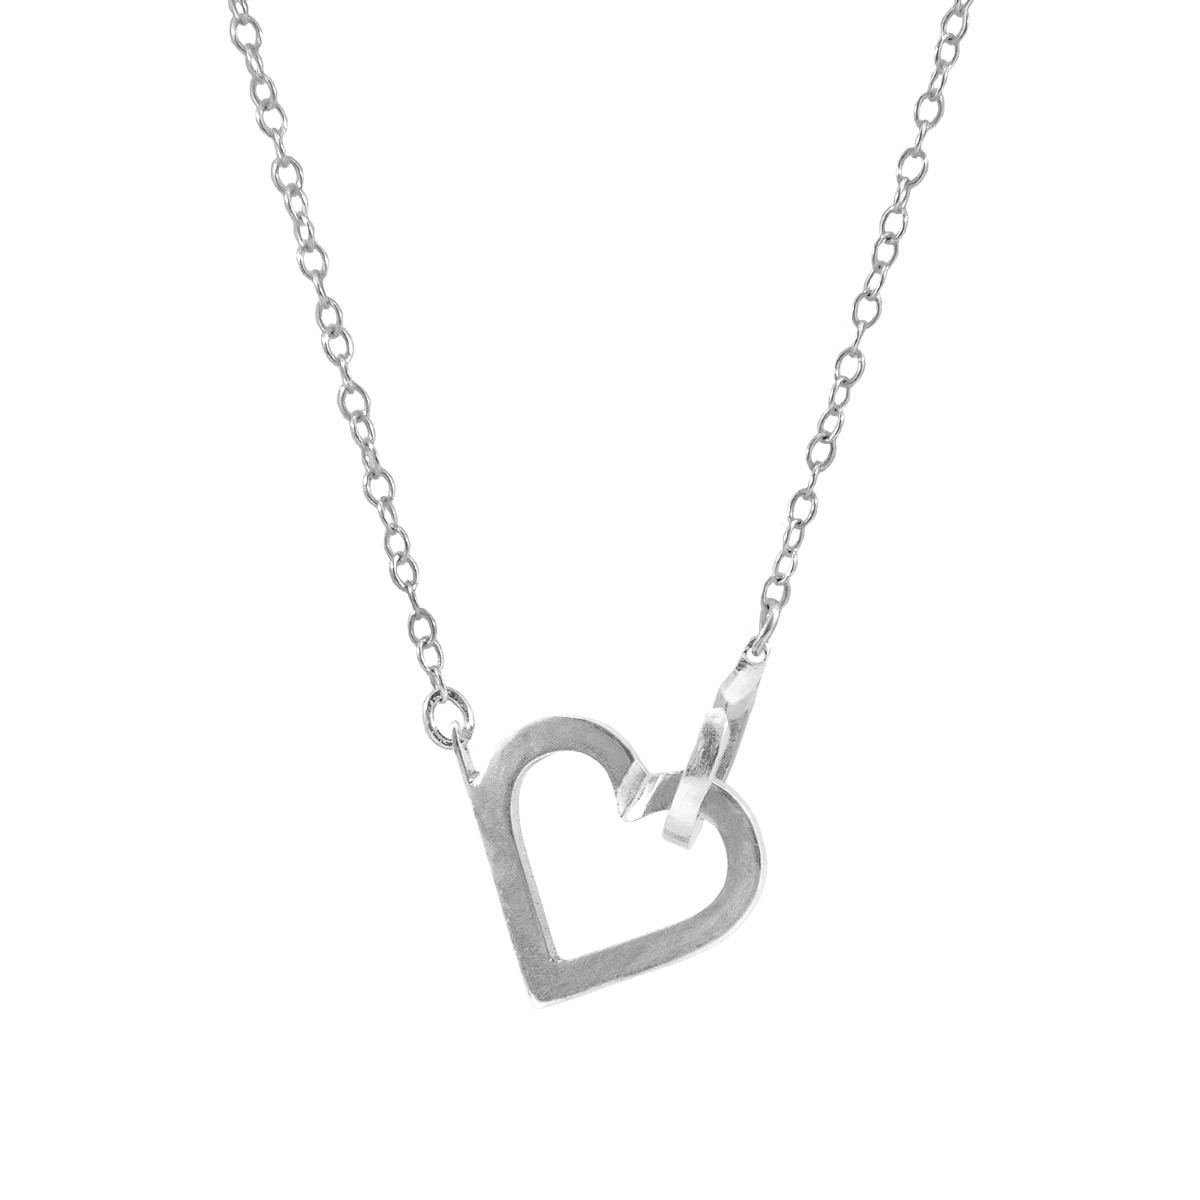 Little Heart Link Paradise Silver Necklace Pendant